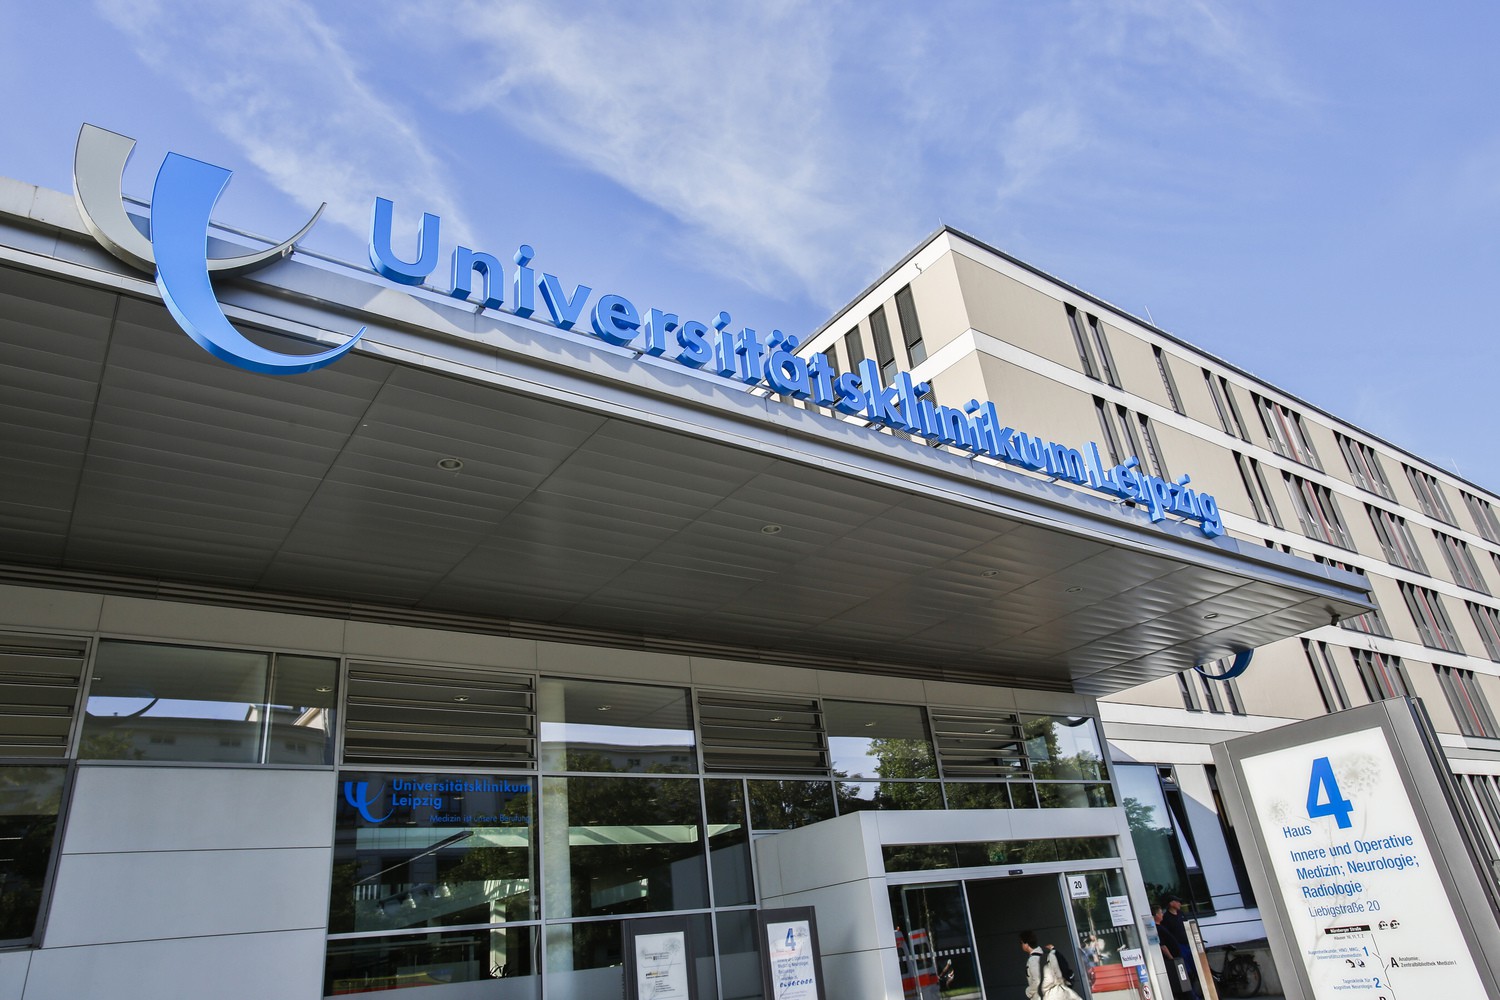 Das Universitätsklinikum Leipzig legt erneut ein positives Jahresergebnis vor.